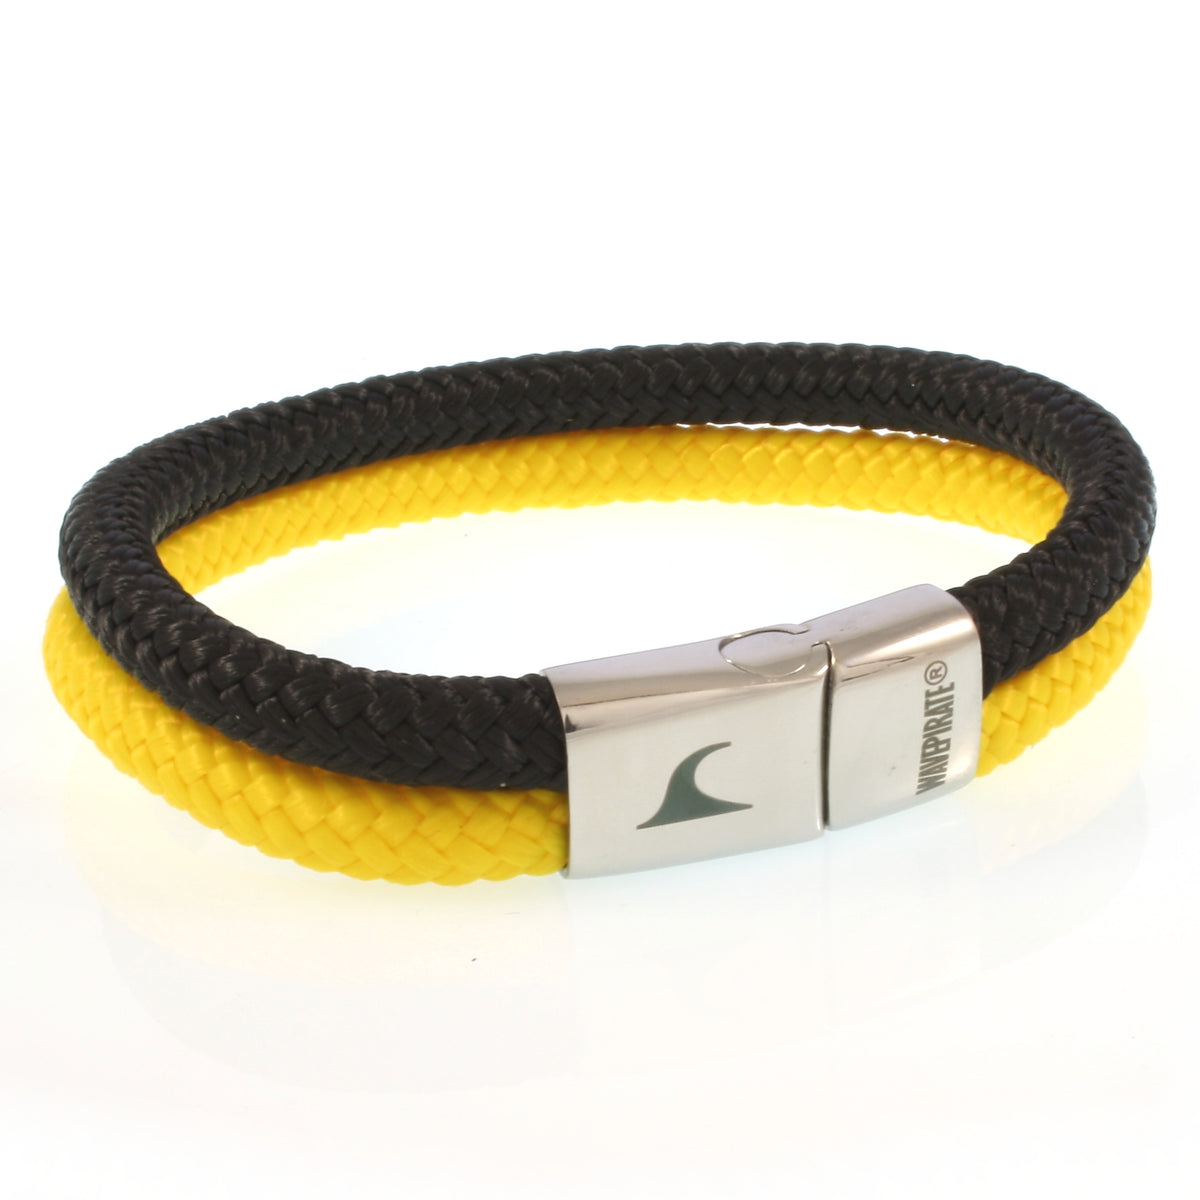 Herren-Segeltau-Armband-Tarifa-schwarz-gelb-geflochten-Edelstahlverschluss-vorn-wavepirate-shop-st